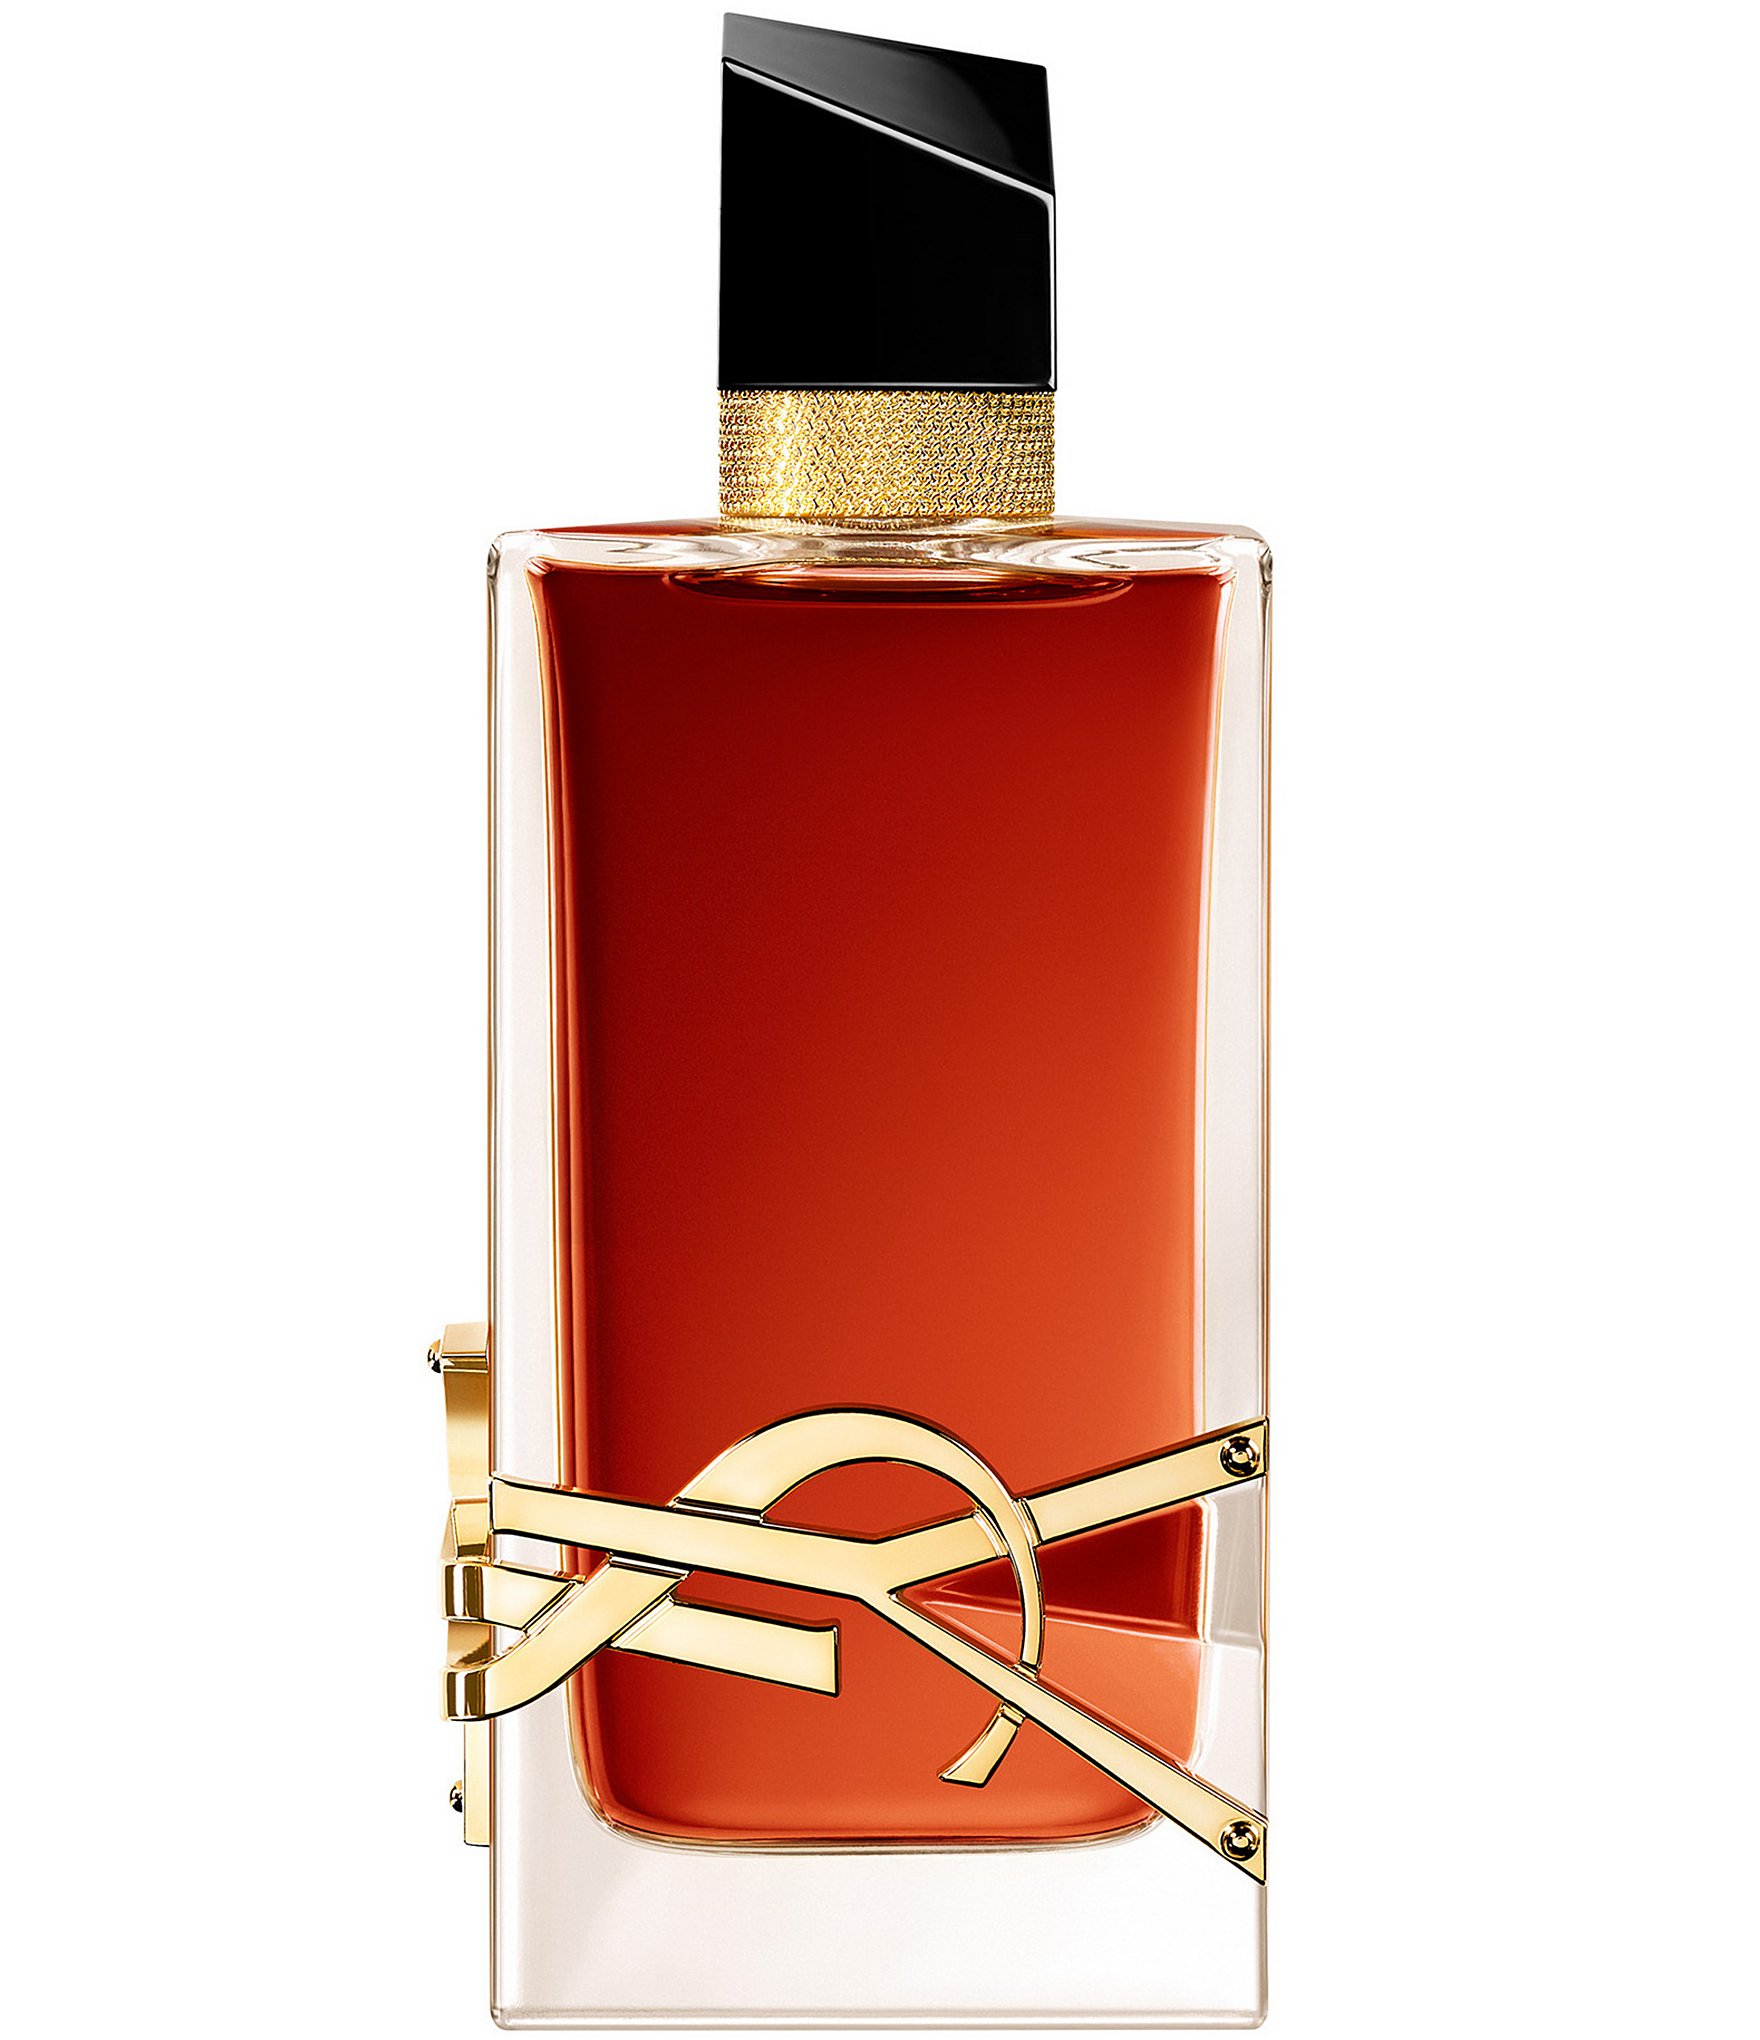 Yves Saint Laurent Libre Le Parfum / Ysl EDP Spray 0.04 oz (1.2 ml) (W)  3614273776257 - Fragrances & Beauty, Libre Le Parfum - Jomashop